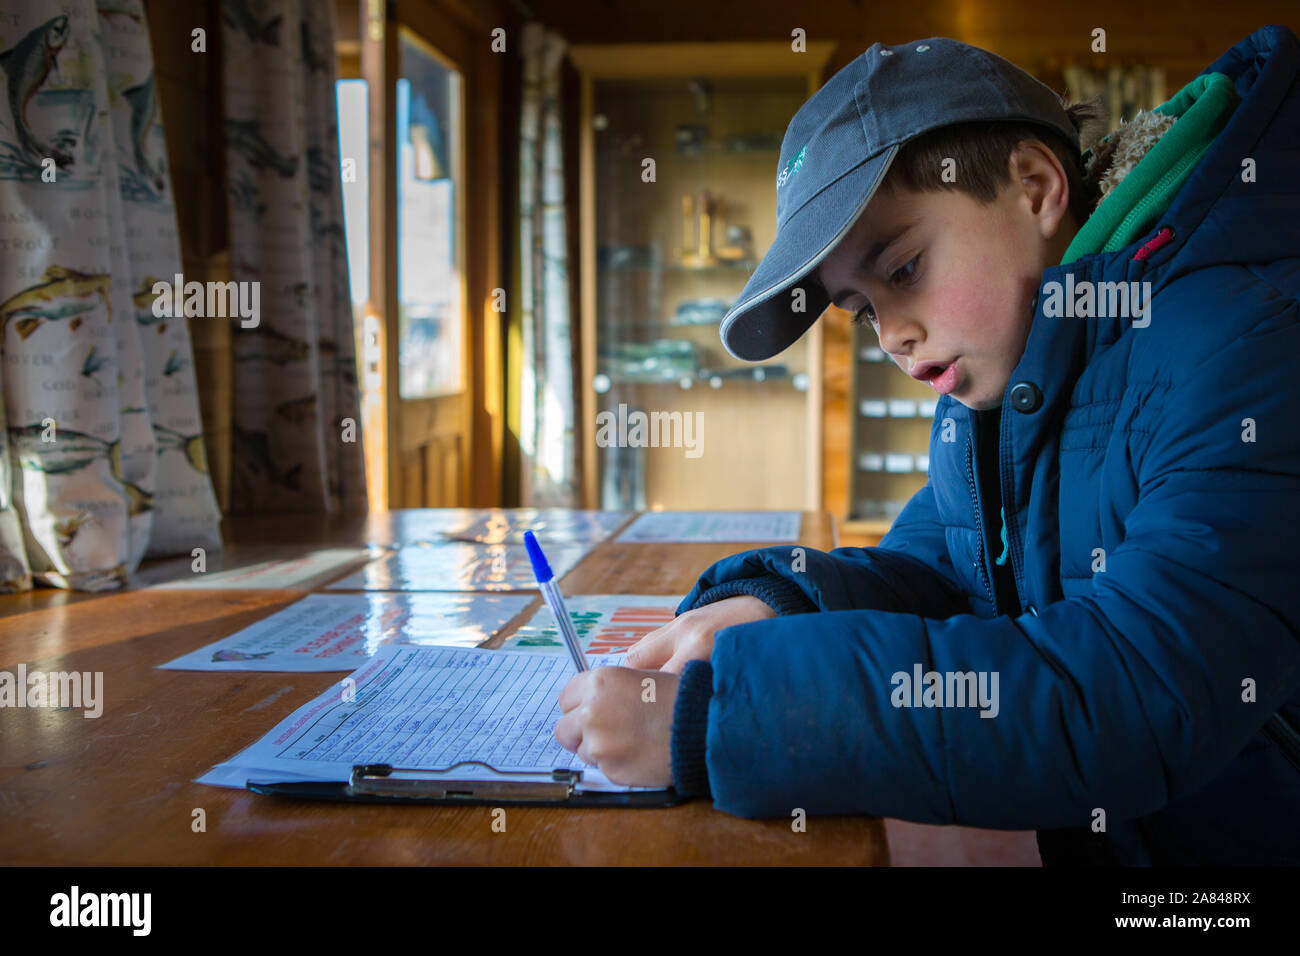 Ein kleiner Junge, der einen Bericht über die Fänge an einem Angelsee, Manningford Trout Fishery, Großbritannien, ausfüllt. Stockfoto